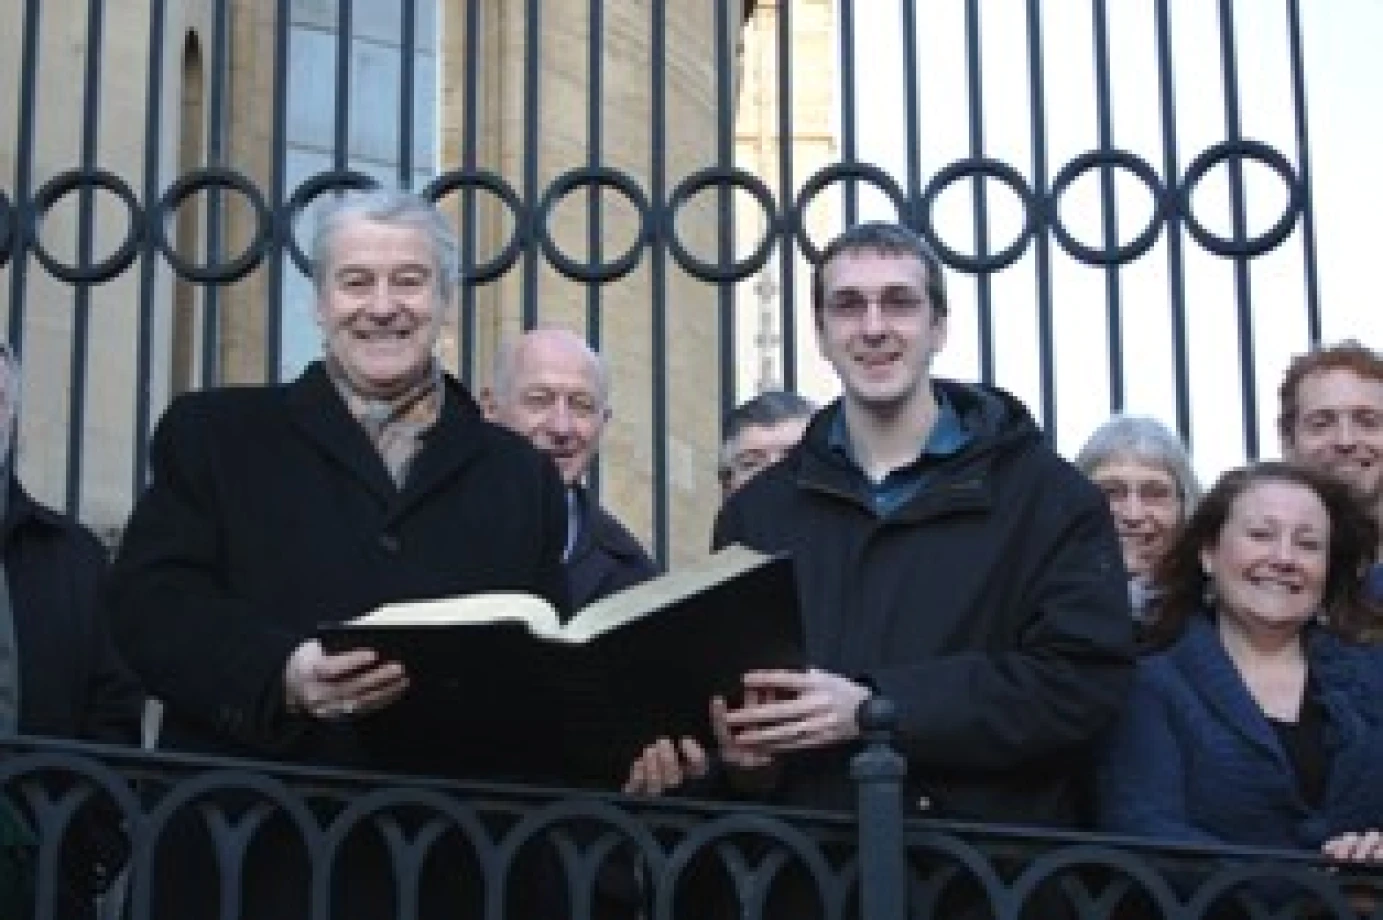 Archbishop of Dublin concludes Bible reading marathon 